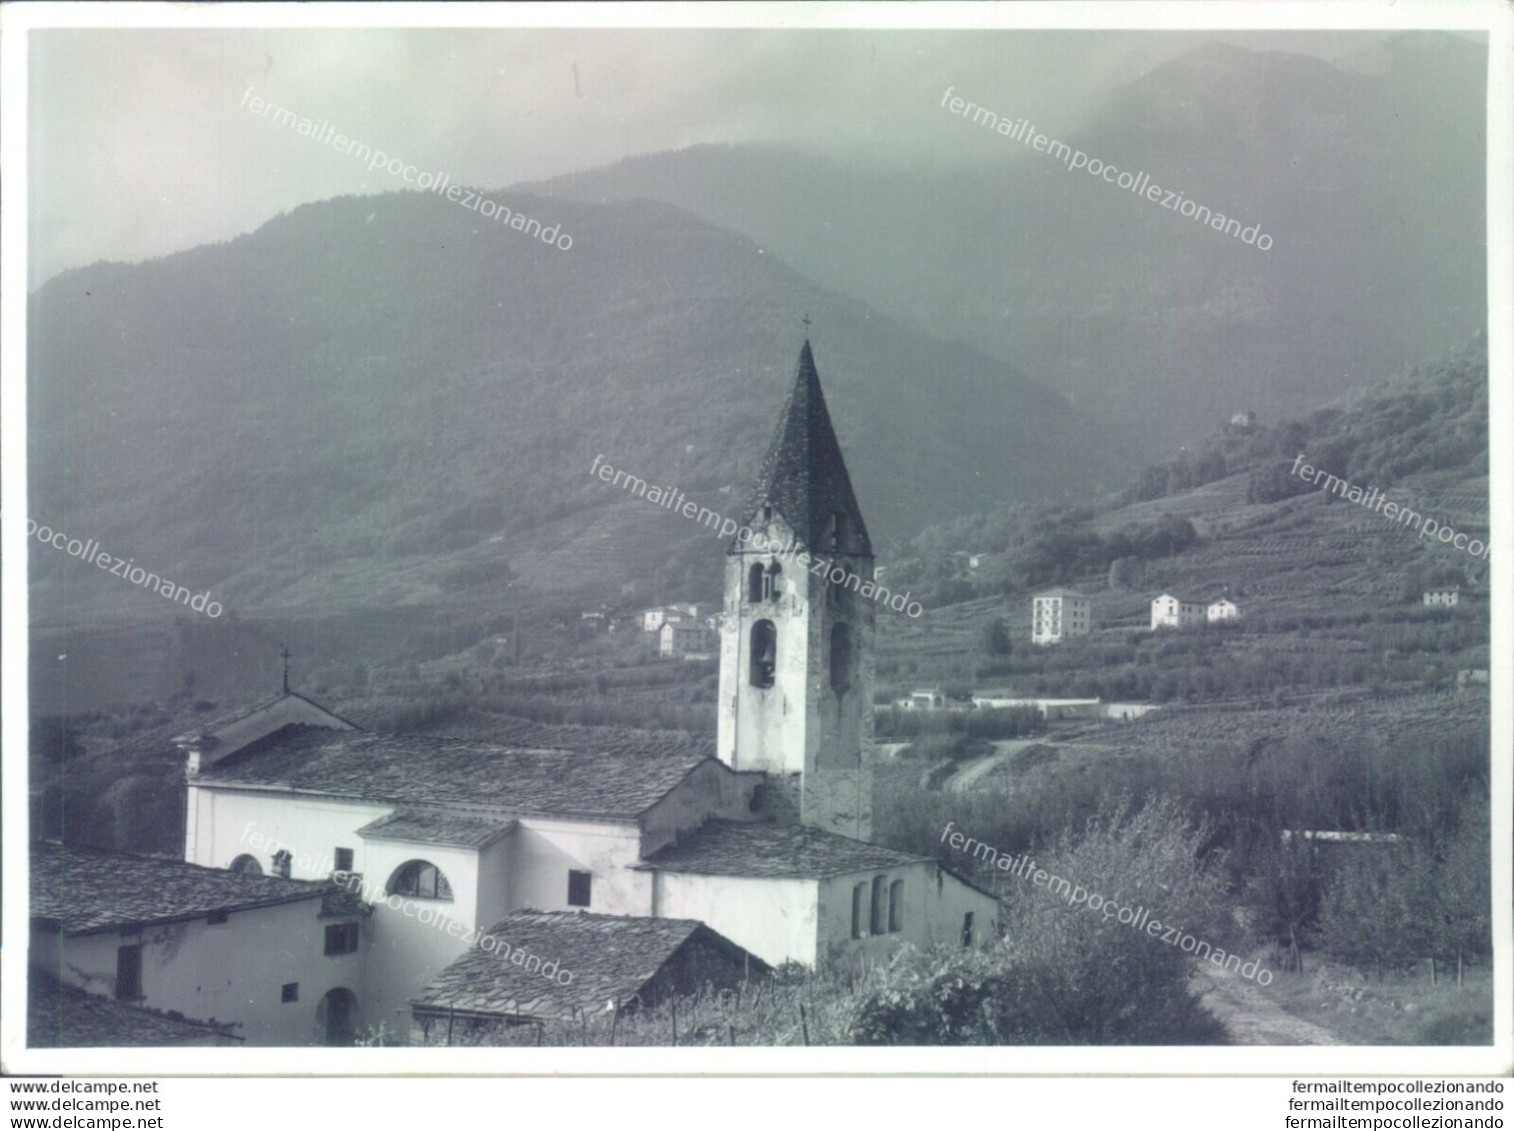 D446 - Bozza Fotografica Provincia Di Sondrio- Castione Di Chiuro - Sondrio